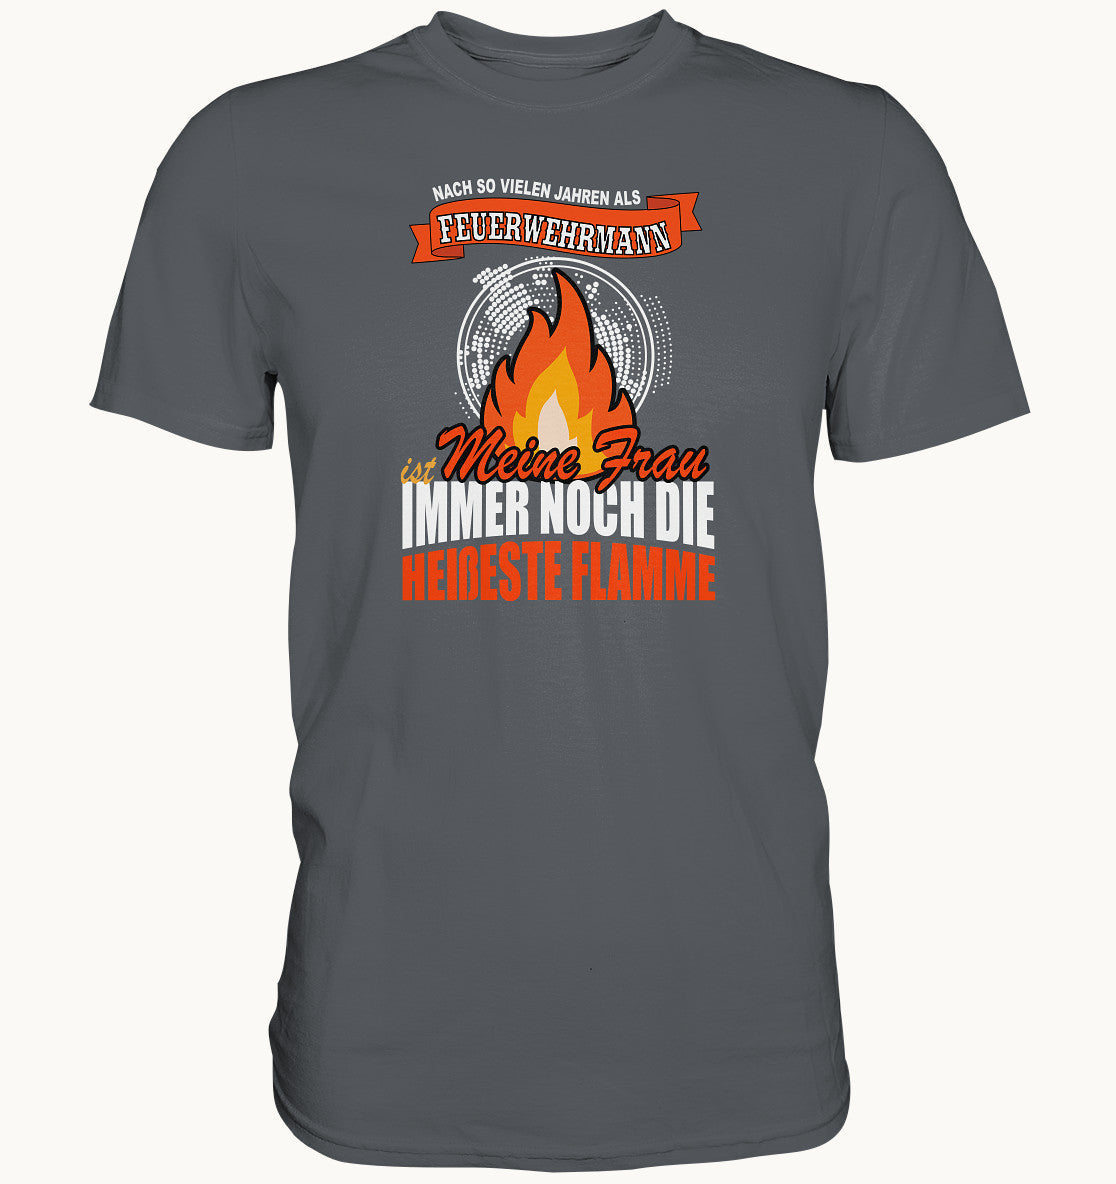 Feuerwehrmann - meine Frau ist die heißeste Flamme - Premium Shirt - Baufun Shop